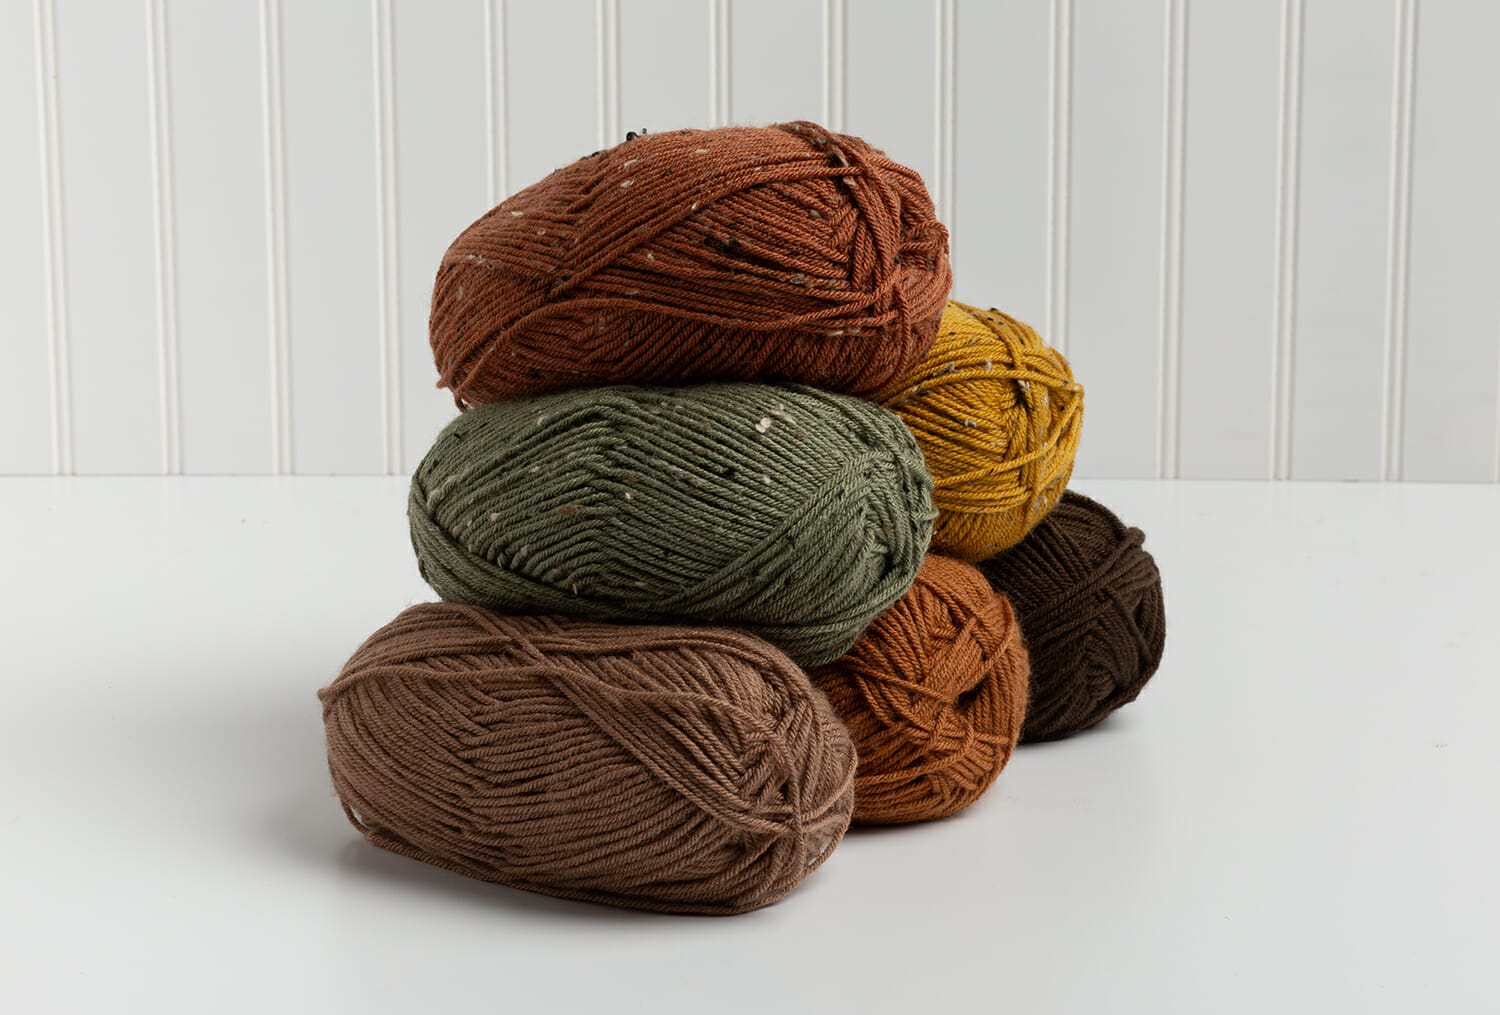 Bendigo Woollen Mills - Wool, Yarn, Patterns and Accessories for